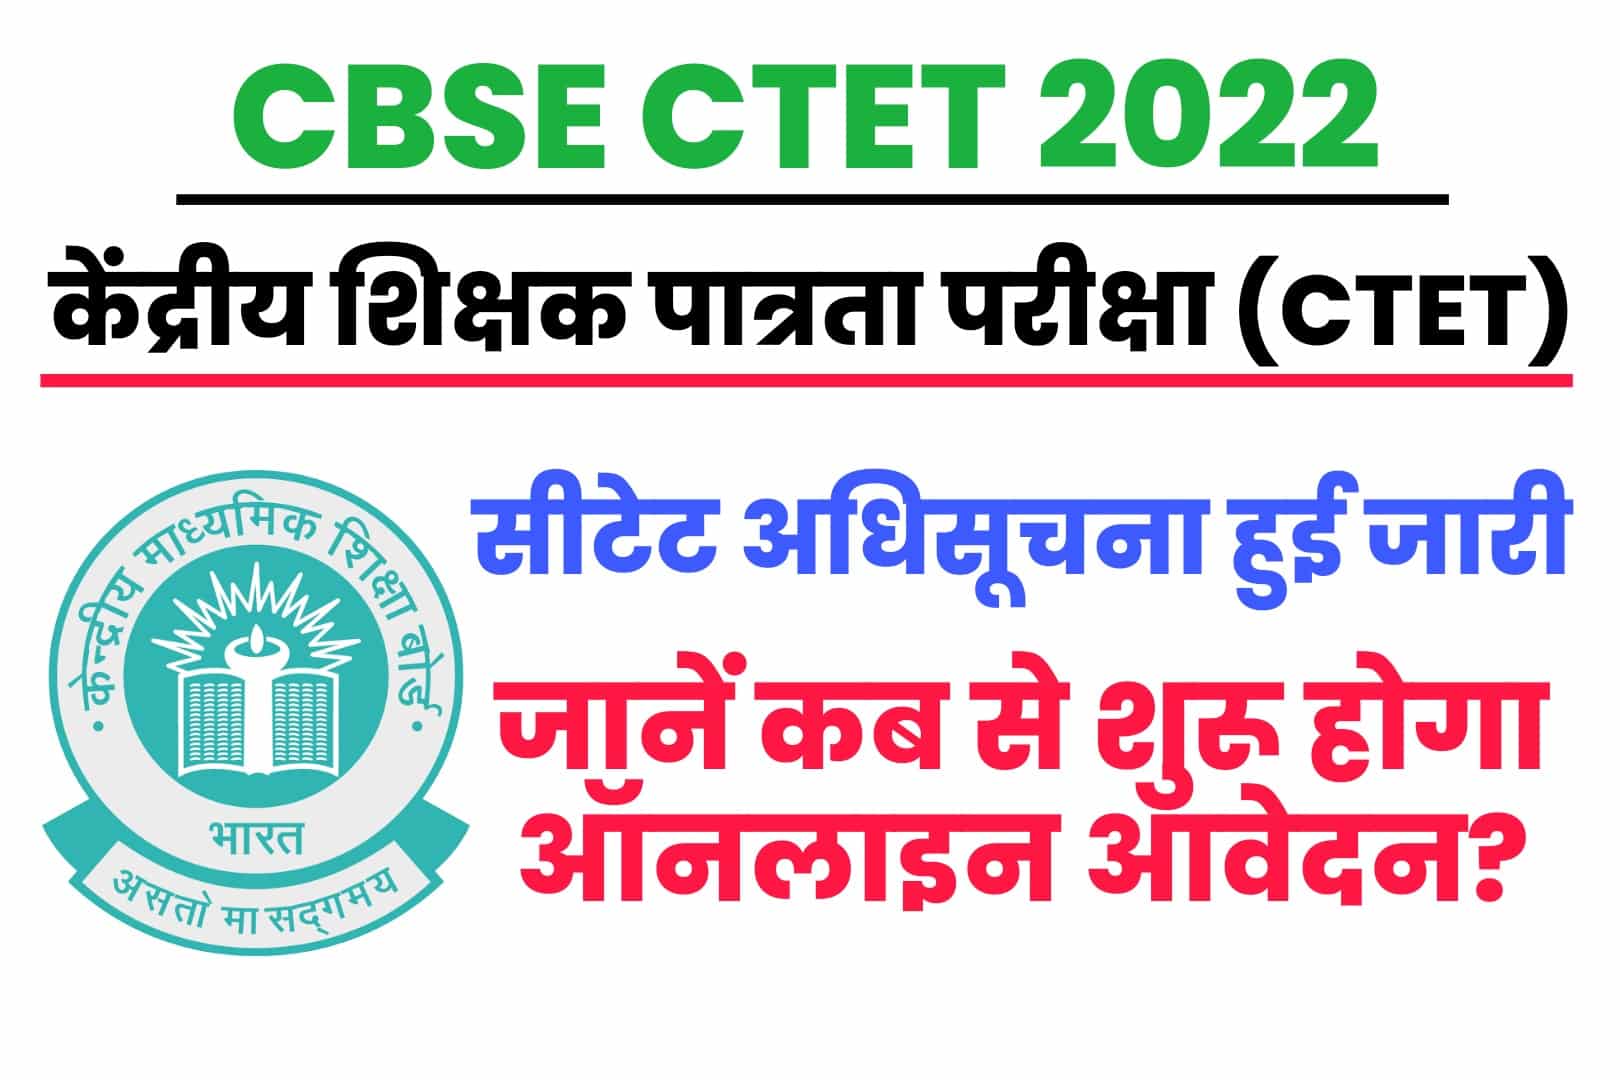 CBSE CTET 2022 Online Form : सीटेट अधिसूचना हुई जारी, जानें कब से शुरू होगा ऑनलाइन आवेदन